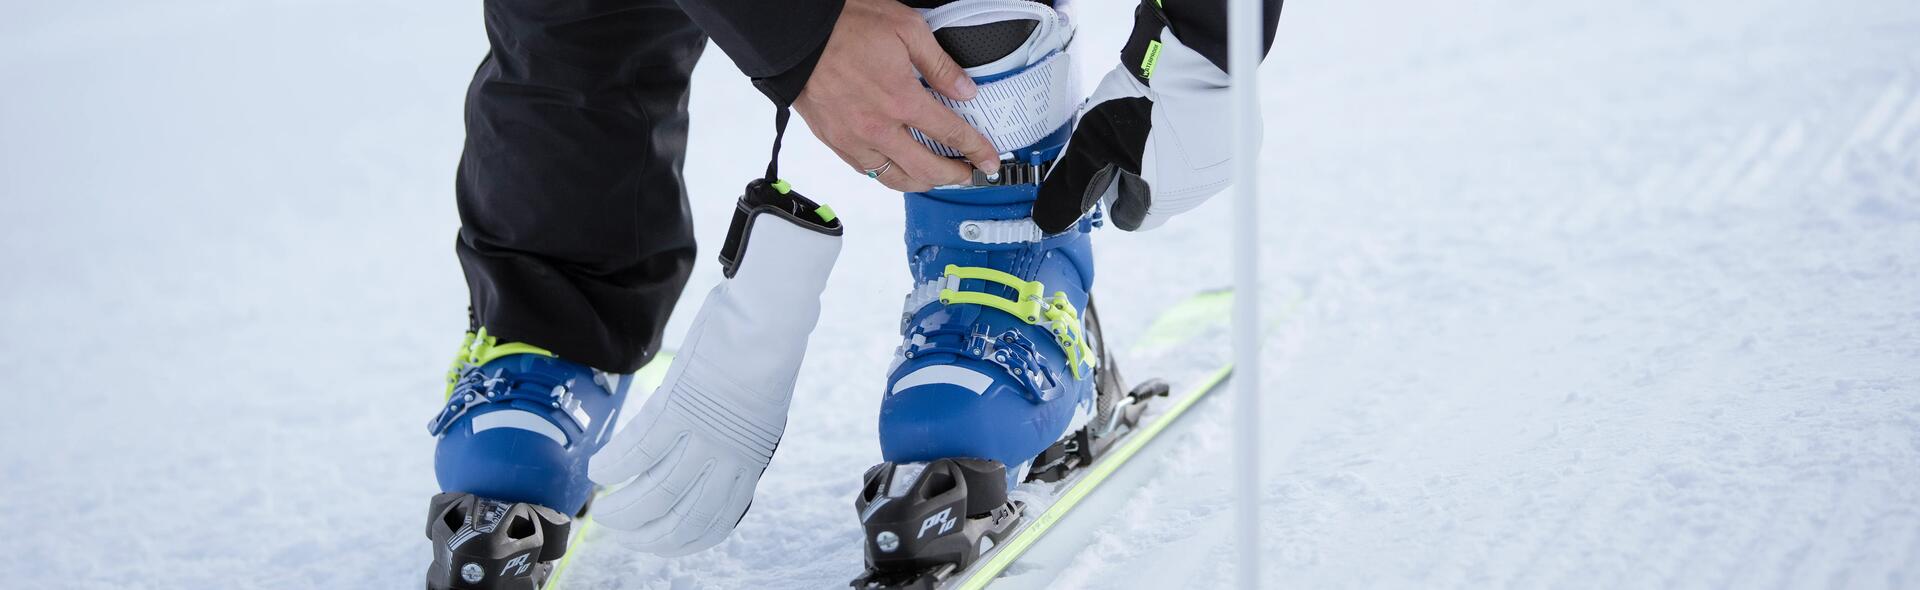 bien serrer les crochets des chaussures de ski - titre